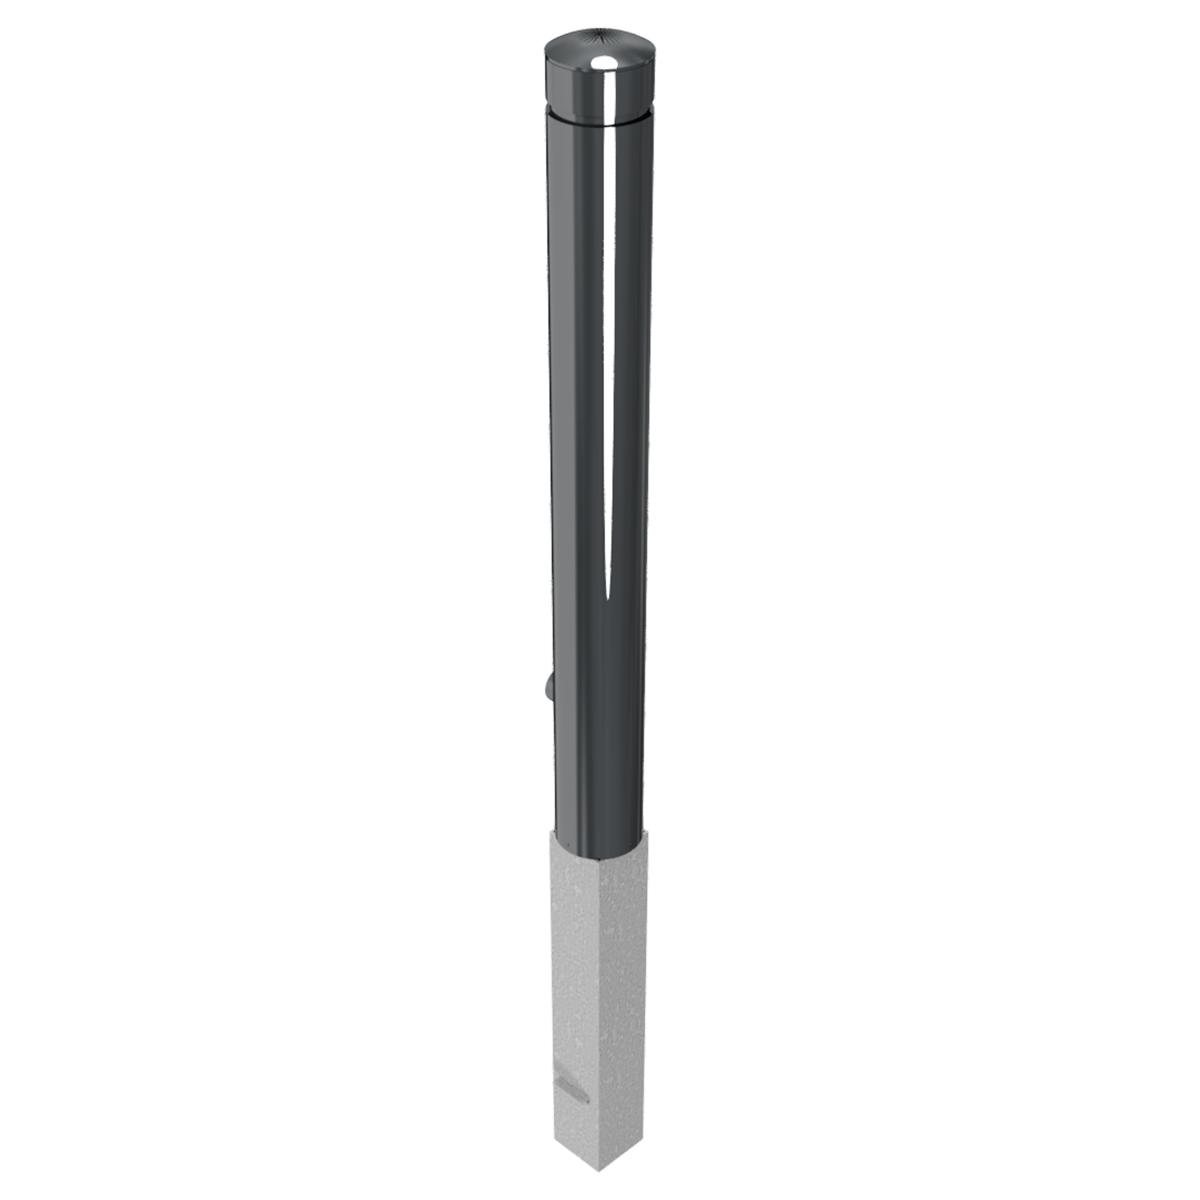 Absperr-Stilpfosten aus Aluminium, herausnehmbar und abschließbar, Ø 100 mm